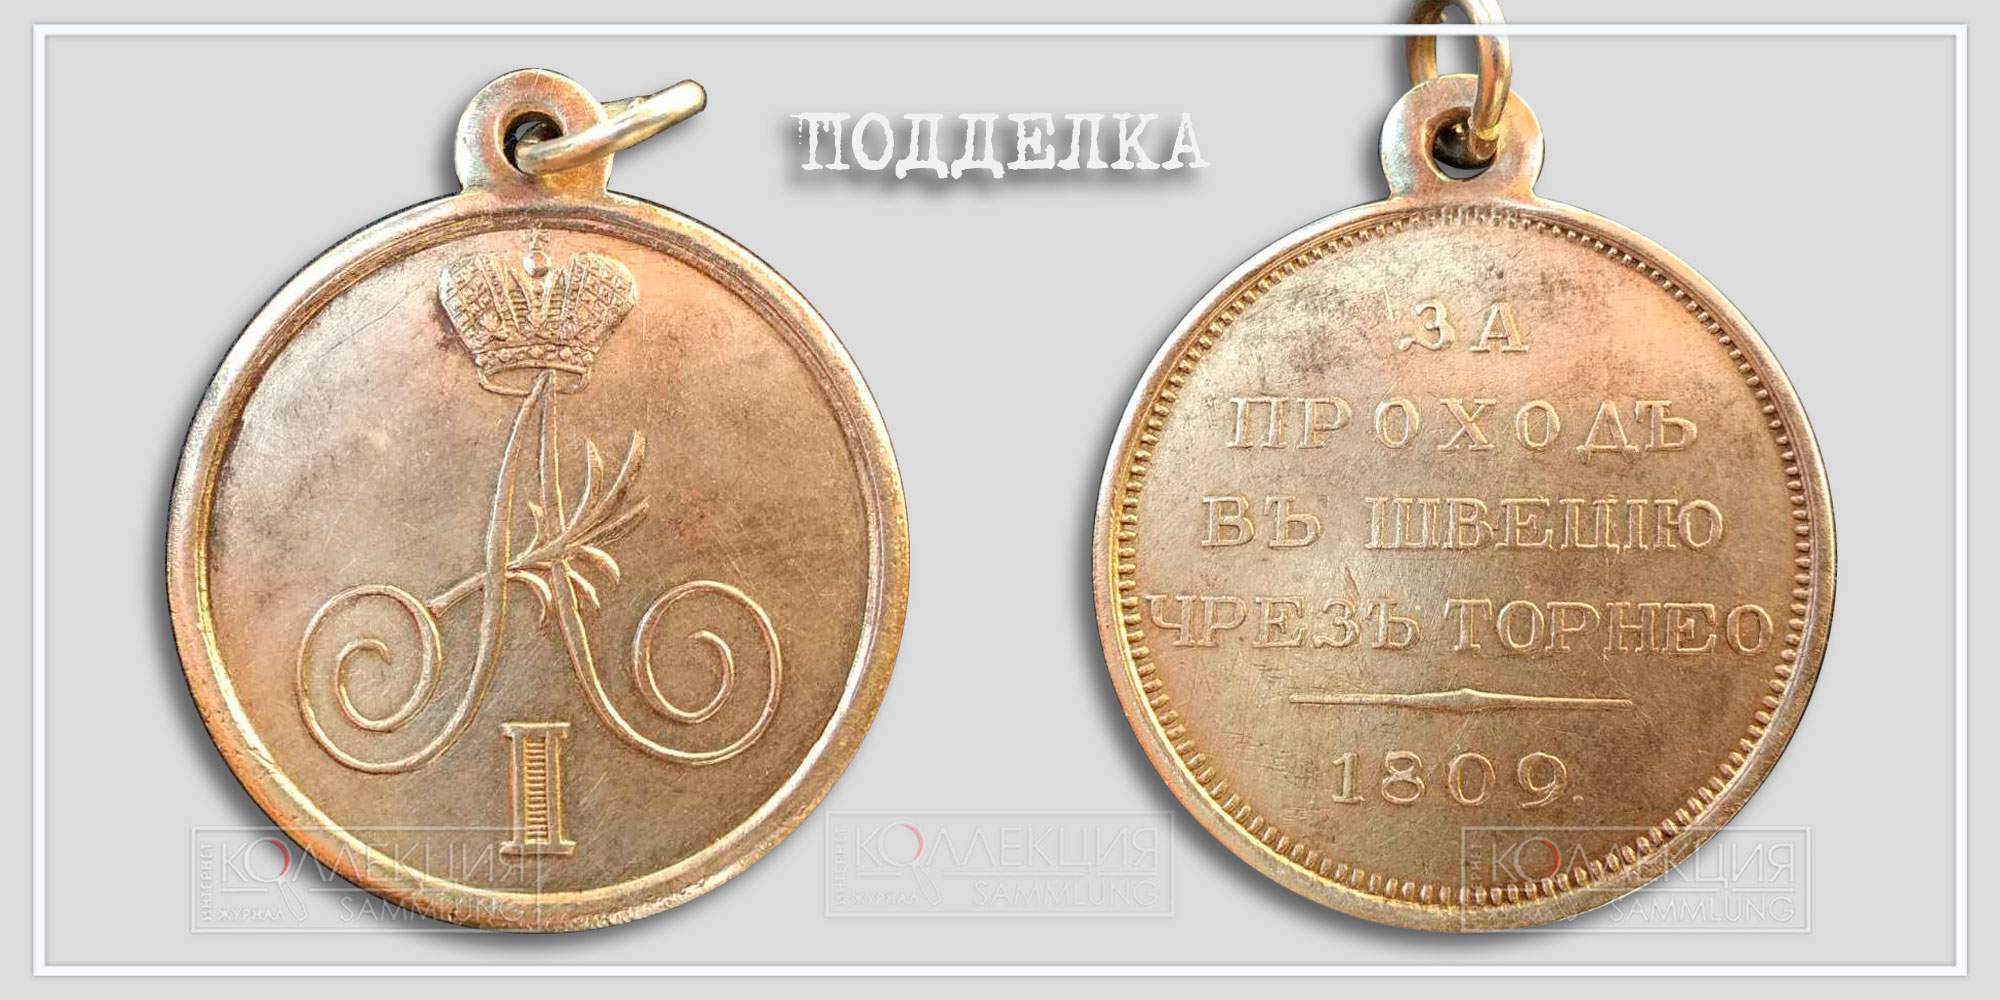 Медаль "За проход в Швецию через Торнео" 1809 (Копия)